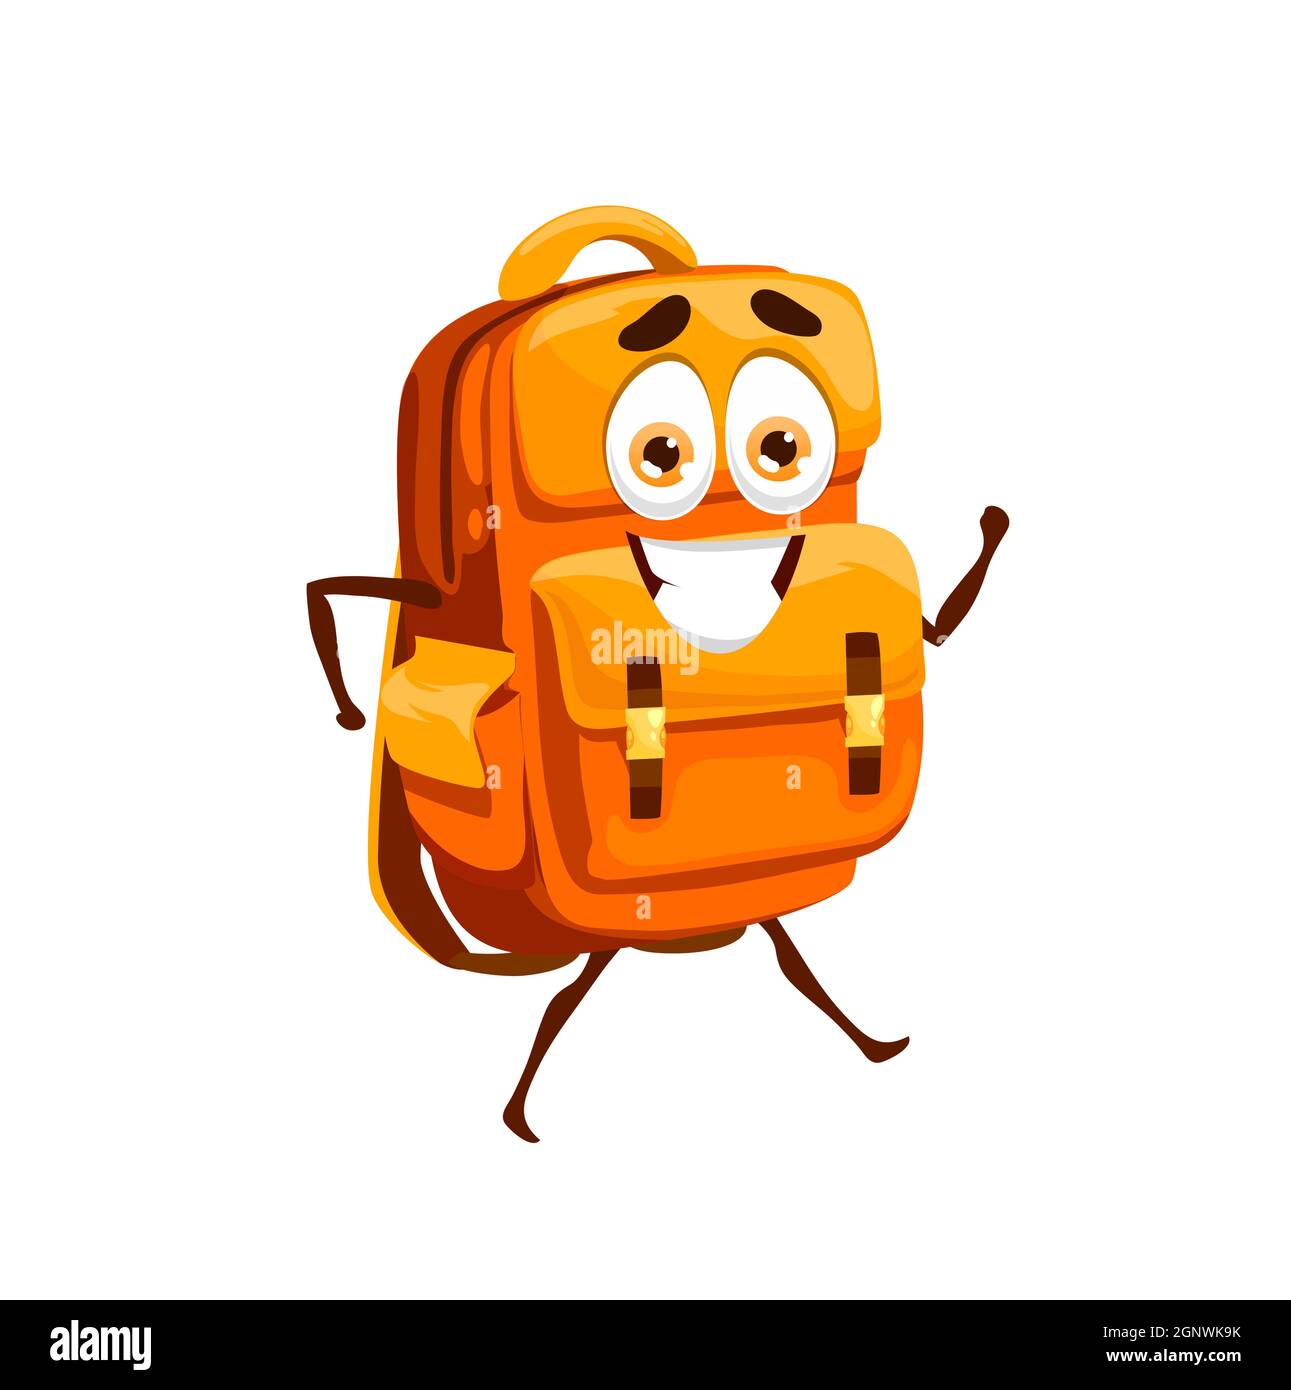 Borsa scuola cartoon, personaggio della mascotte della borsa scolastica.  Divertente zaino arancione con viso sorridente felice, oggetto di  cancelleria scuola o accessorio per gli studenti carino personaggio  vettoriale isolato Immagine e Vettoriale 